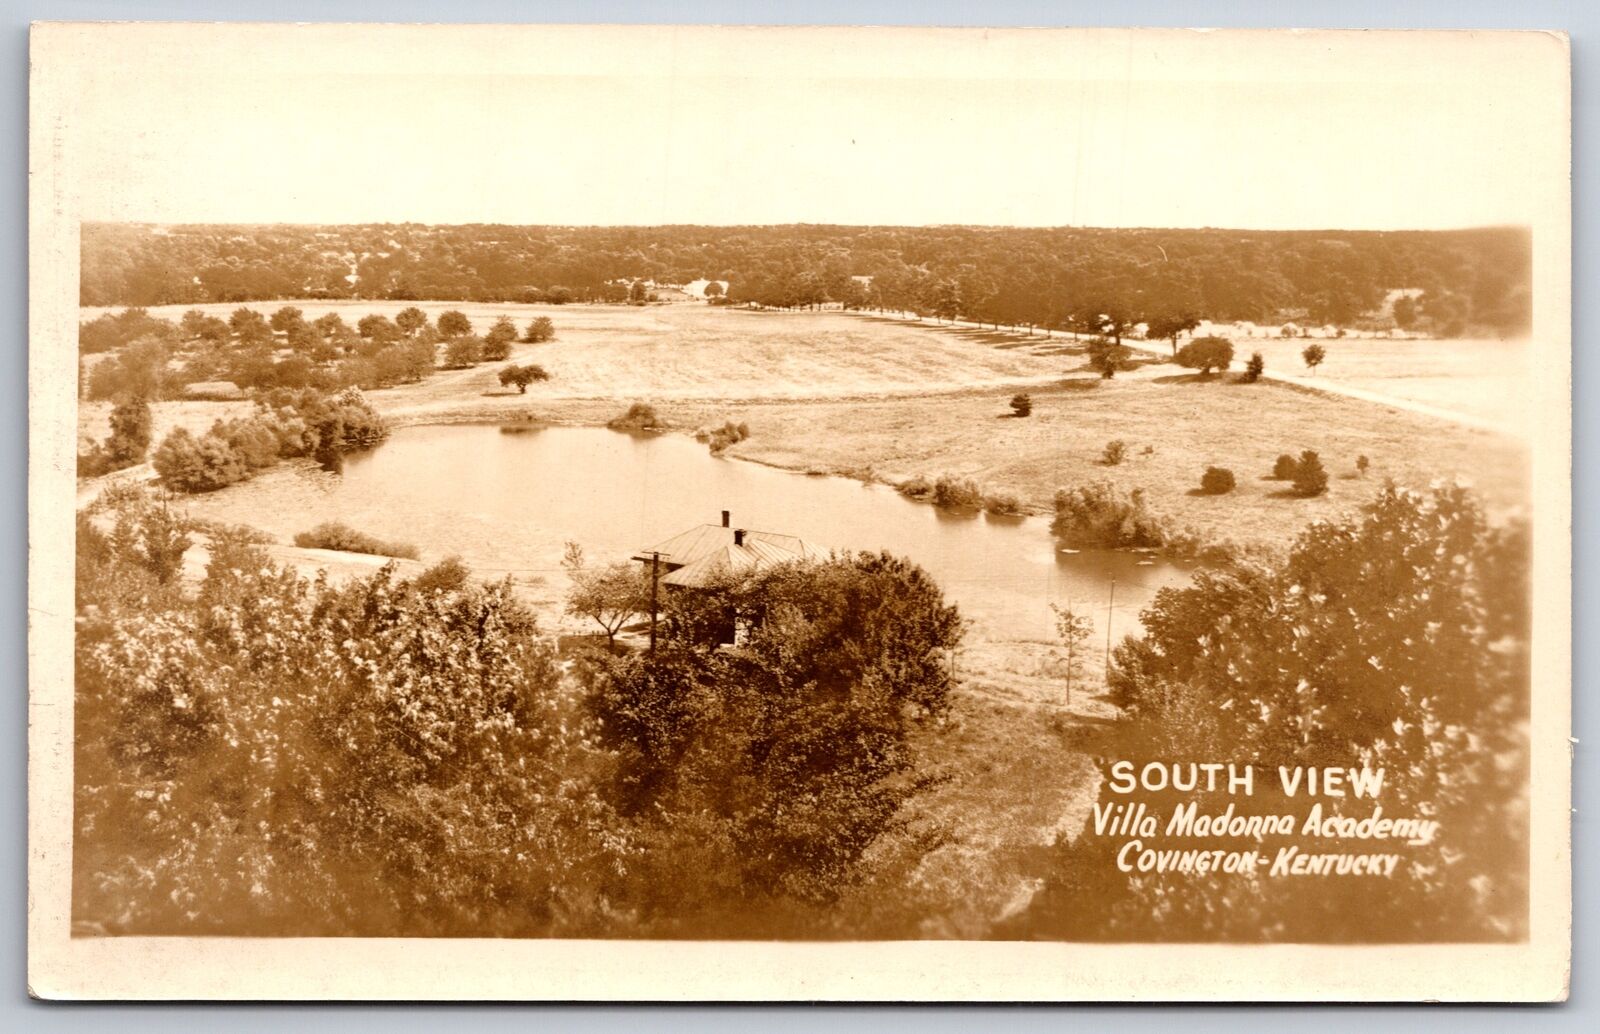 Covington Kentucky~Villa Madonna Academy South View~1930s RPPC